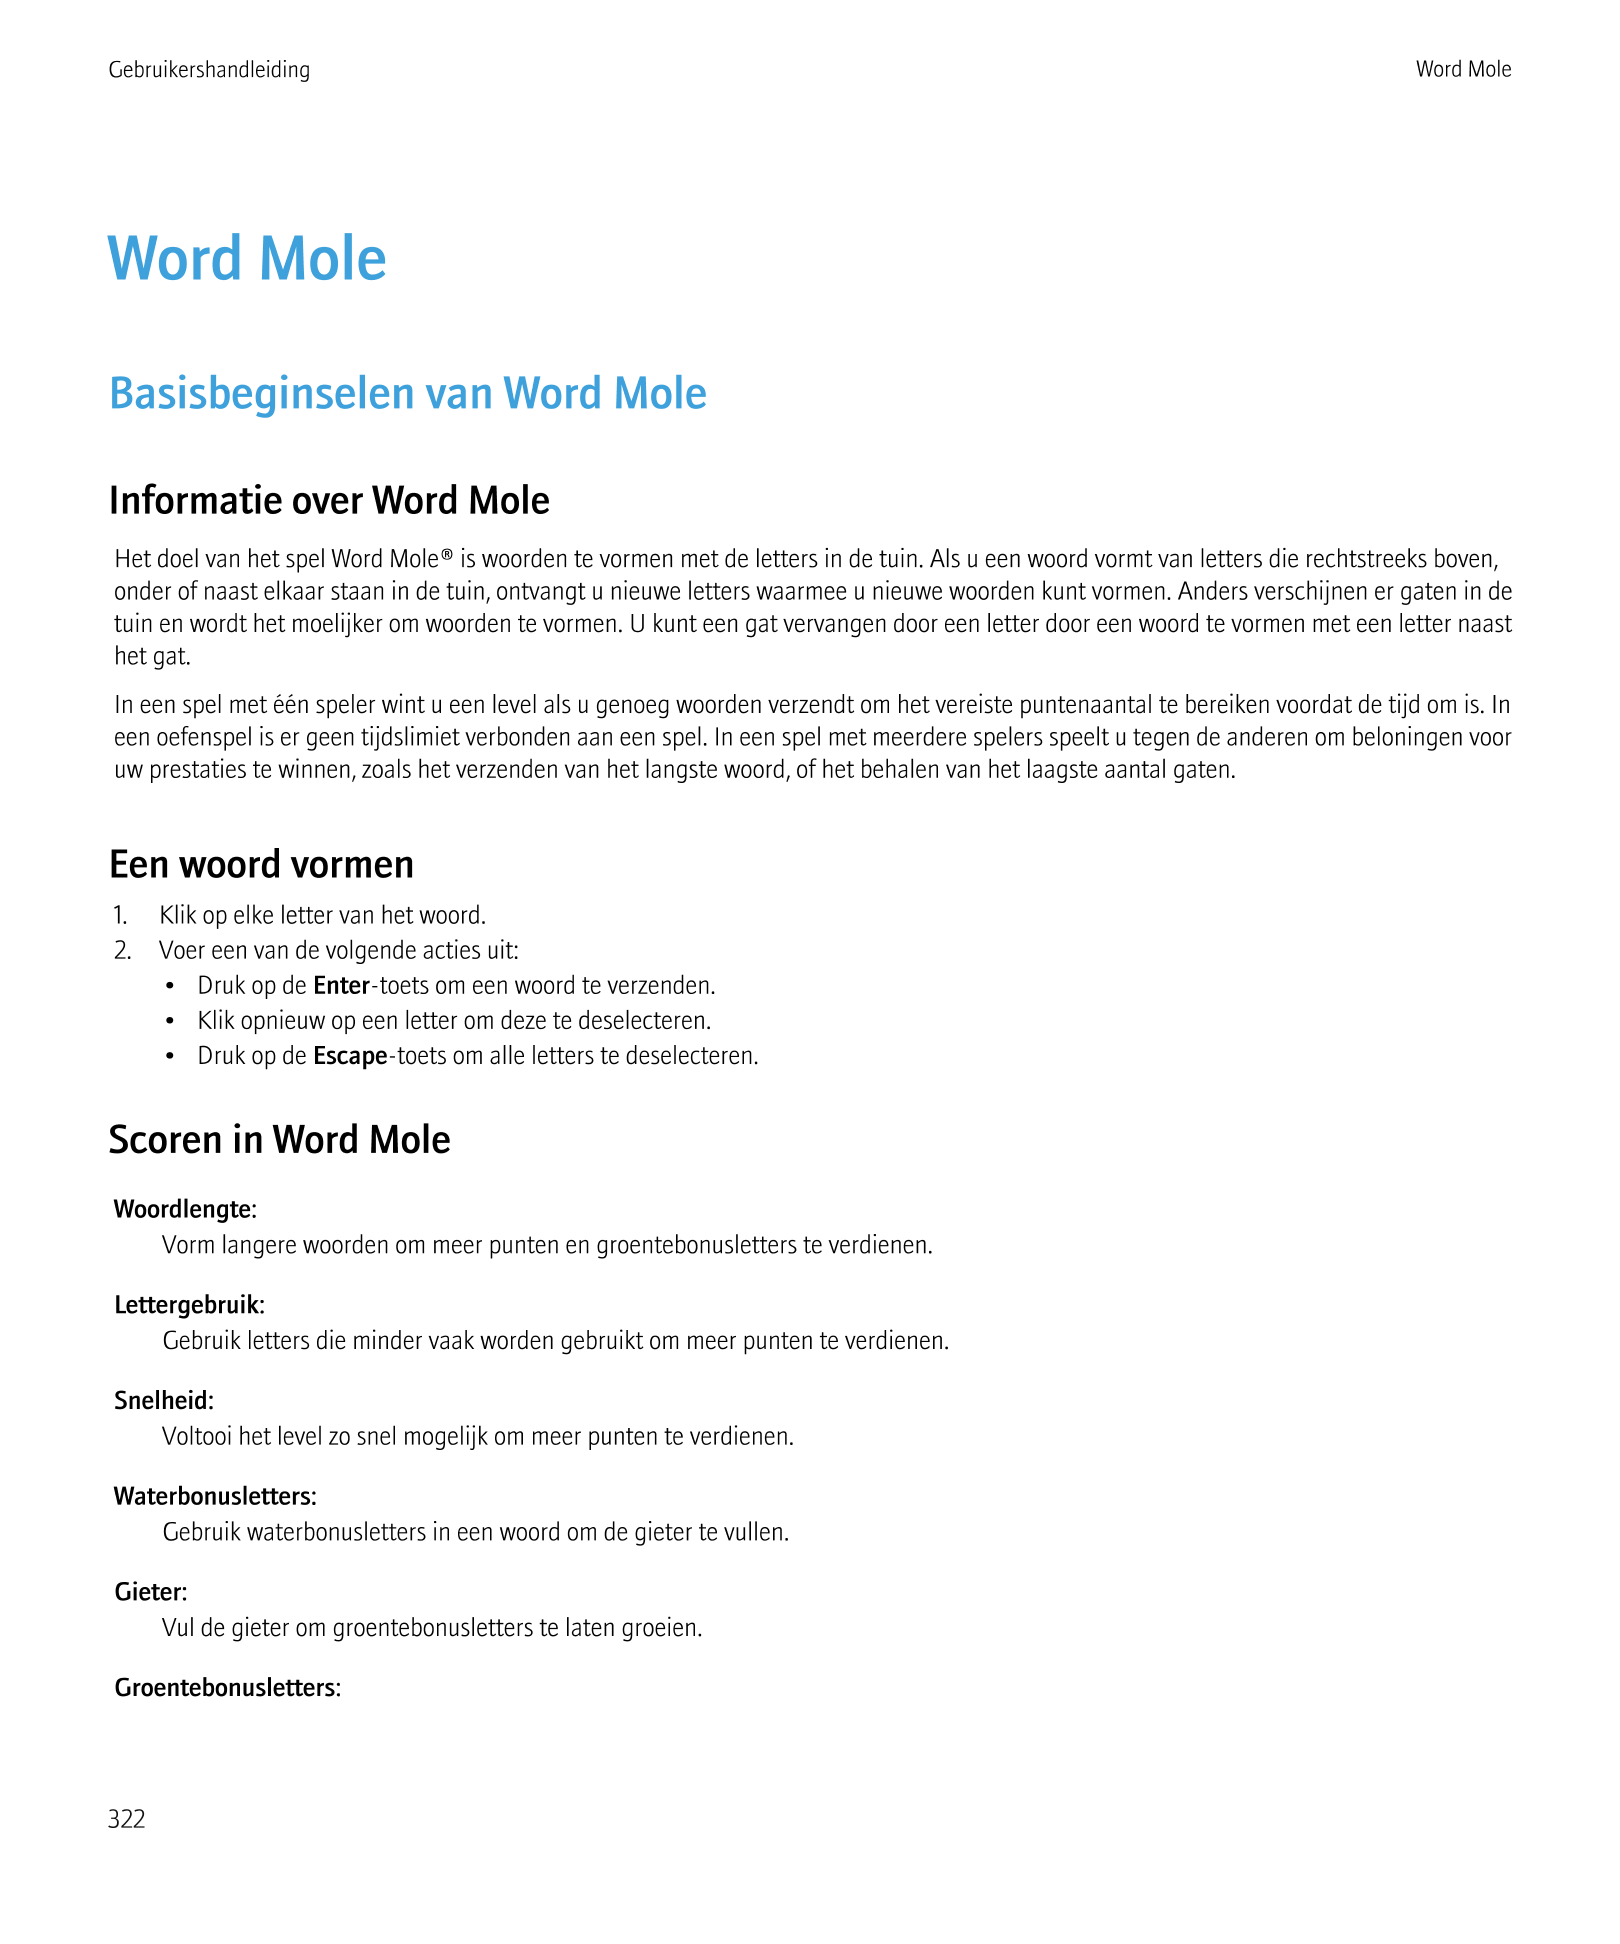 Gebruikershandleiding Word Mole
Word Mole
Basisbeginselen van Word Mole
Informatie over Word Mole
Het doel van het spel Word Mol